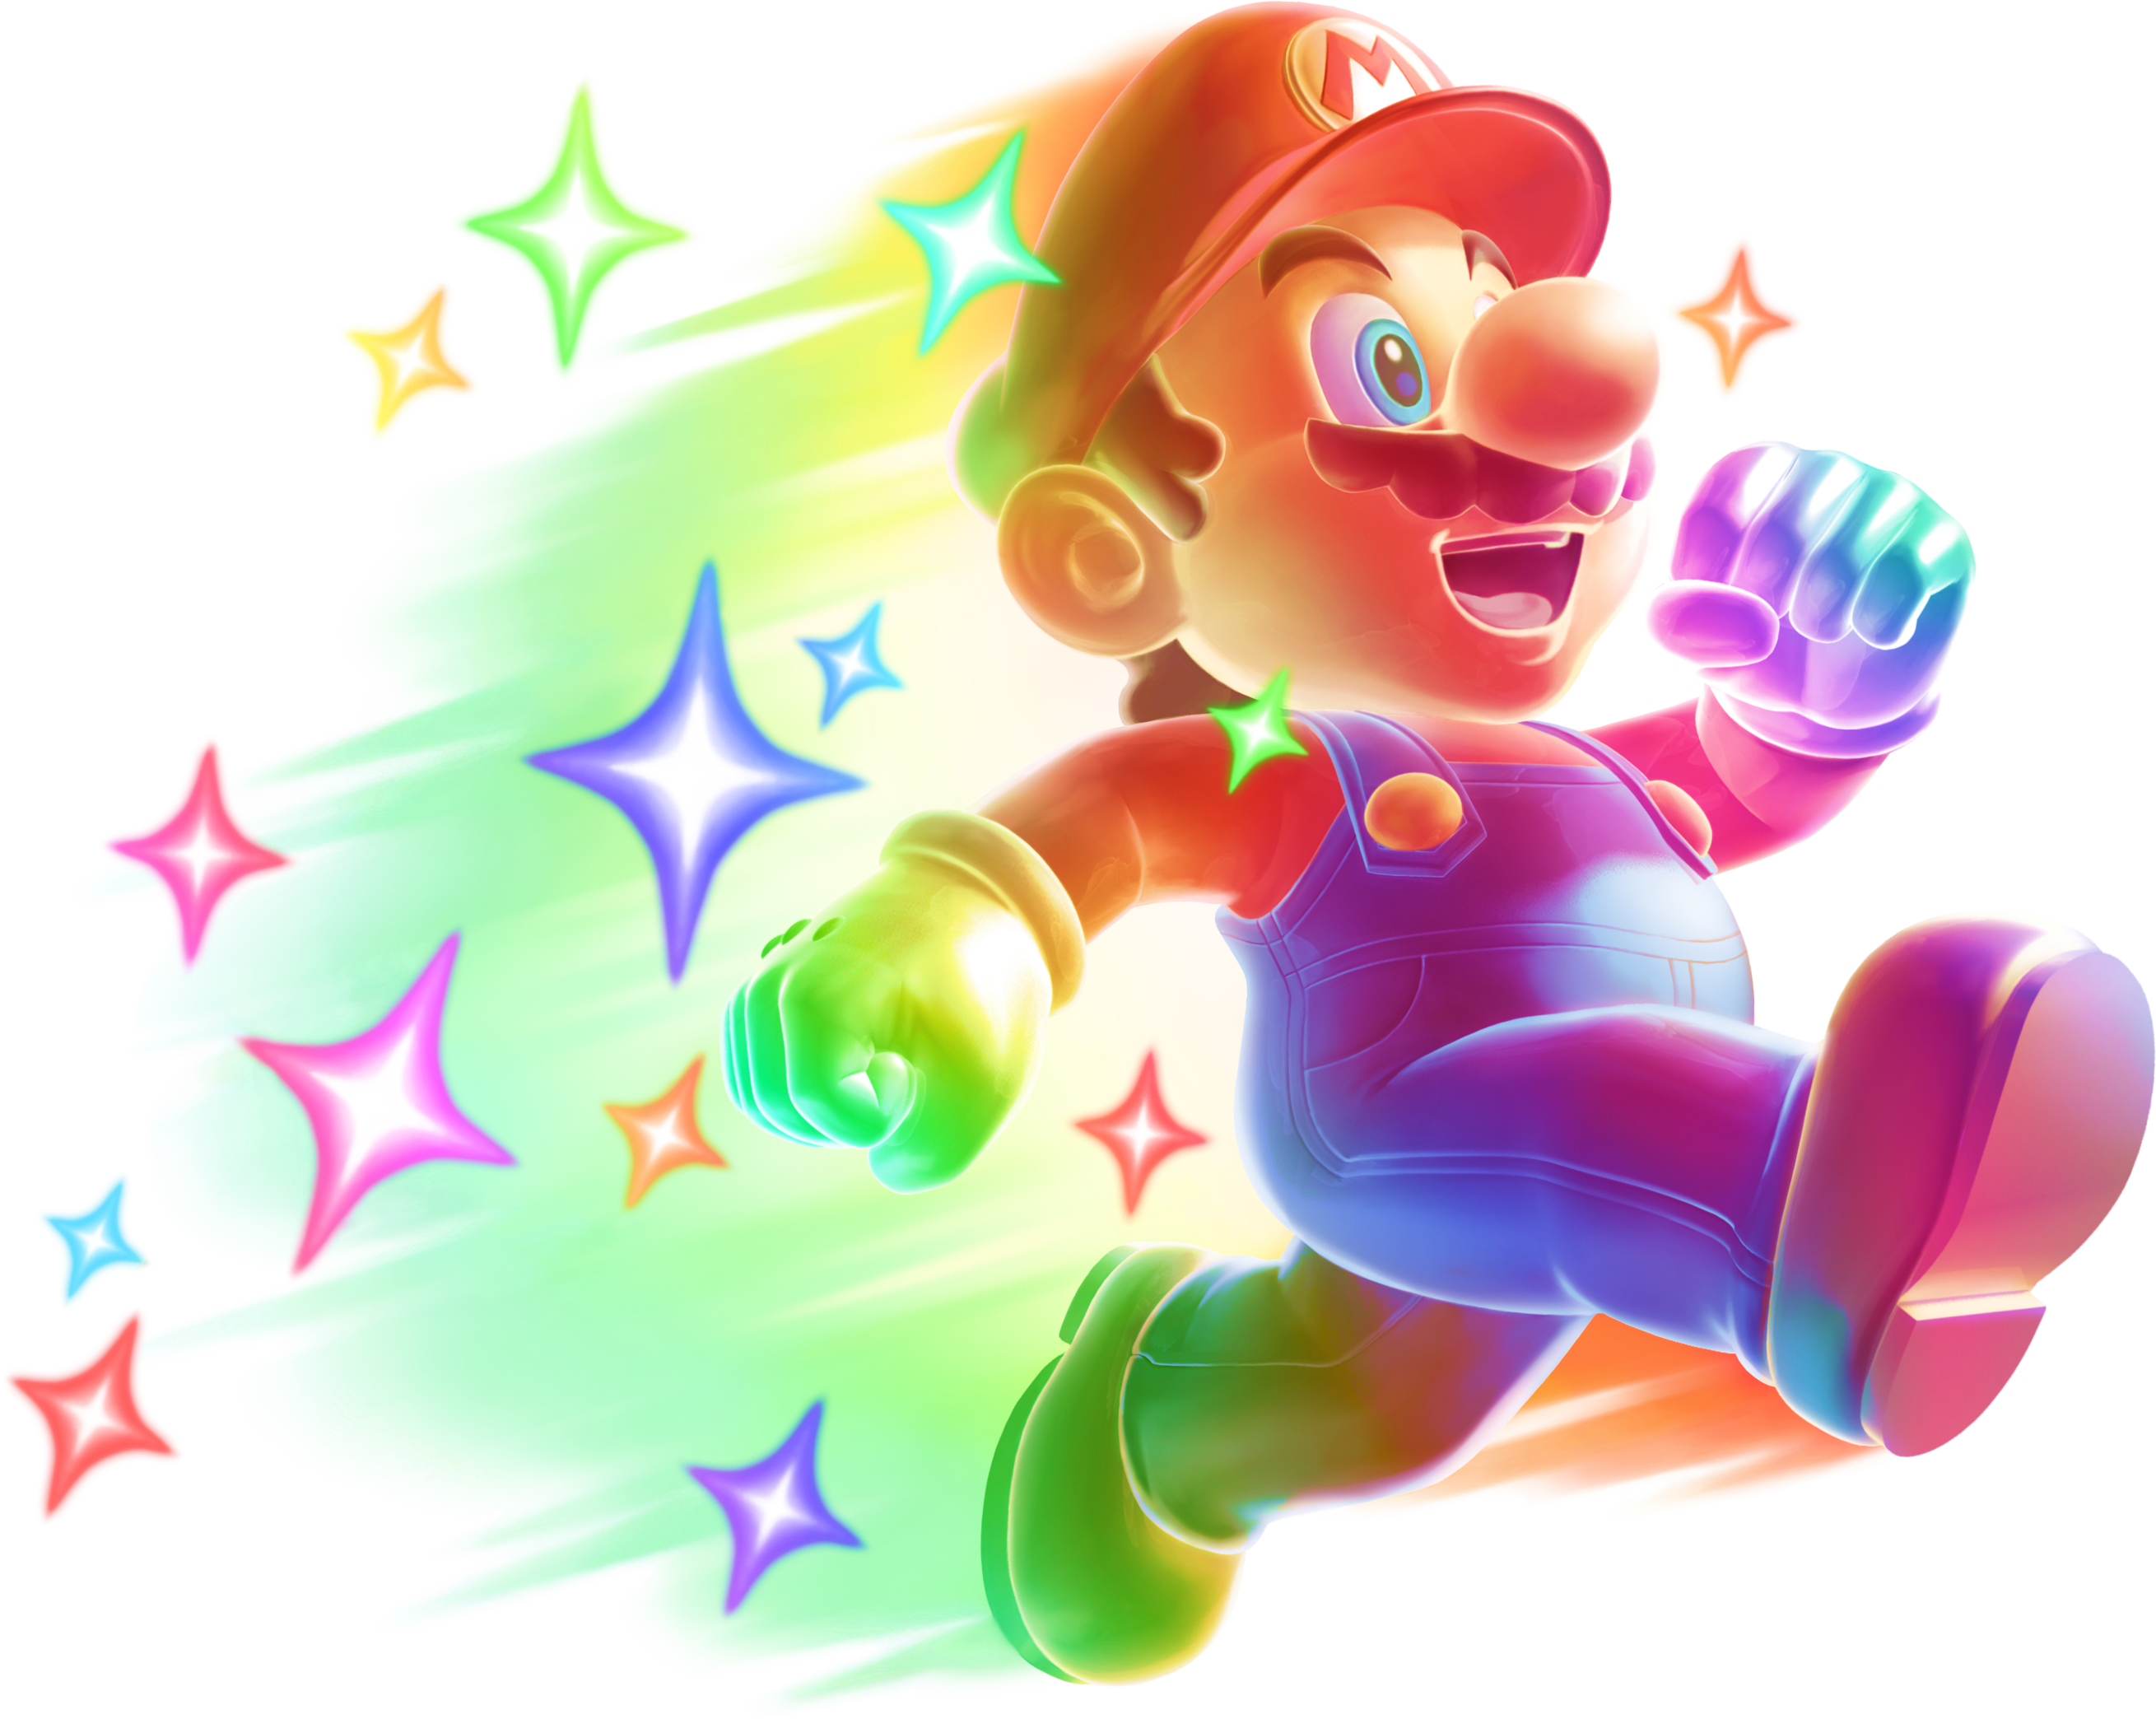 Green Shell - Super Mario Wiki, the Mario encyclopedia